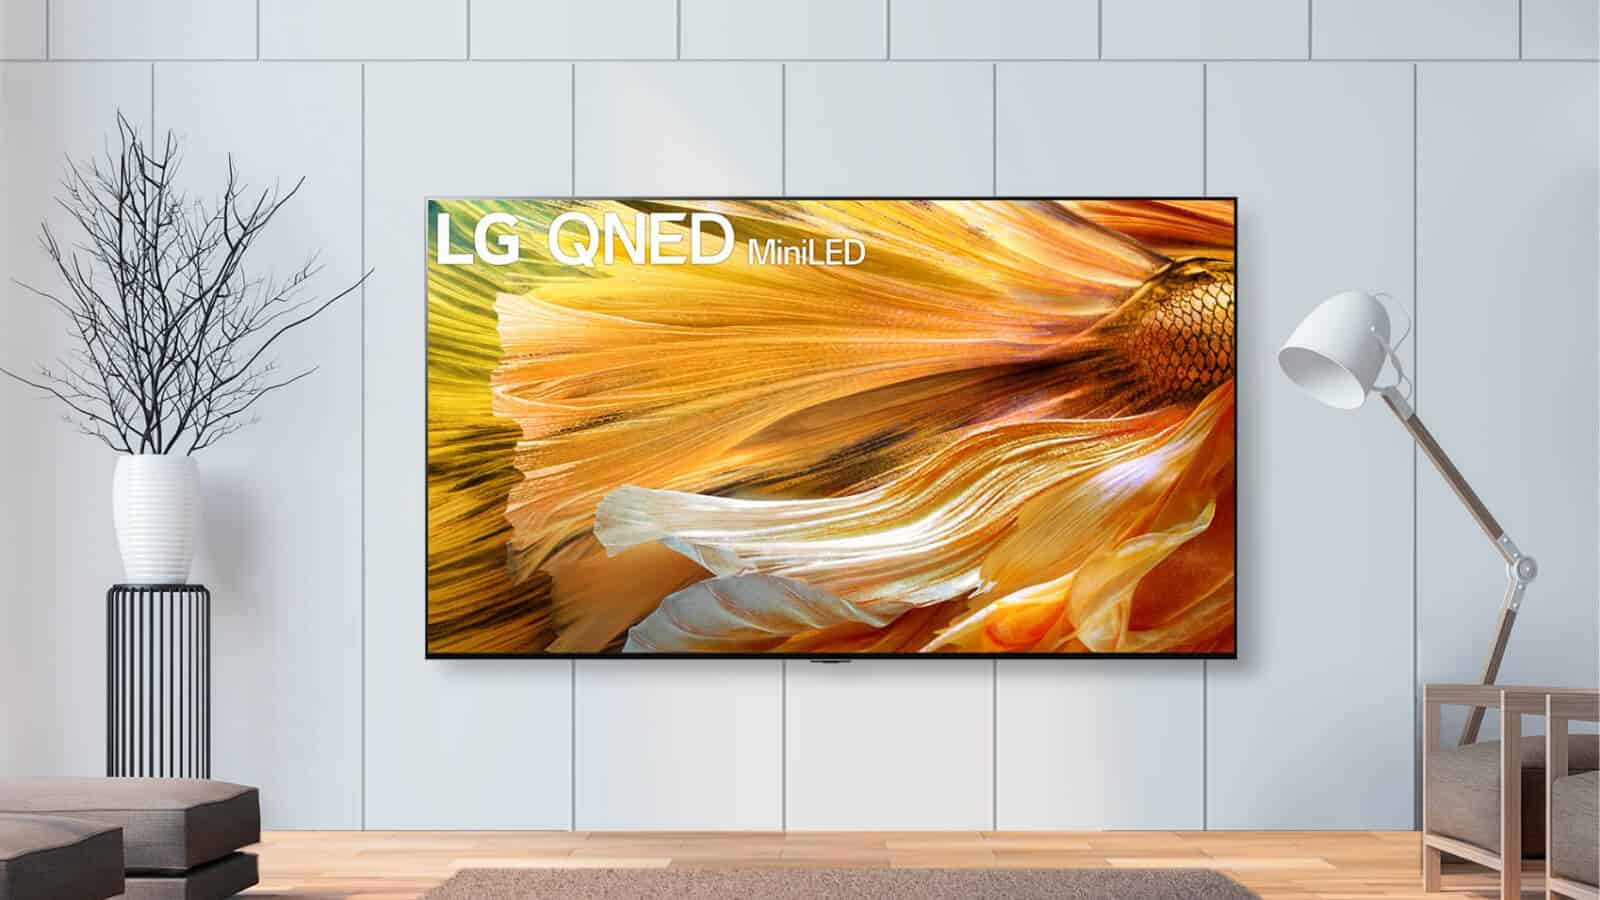 Новые светодиодные мини-телевизоры LG QNED прибывают в США Далее… 1